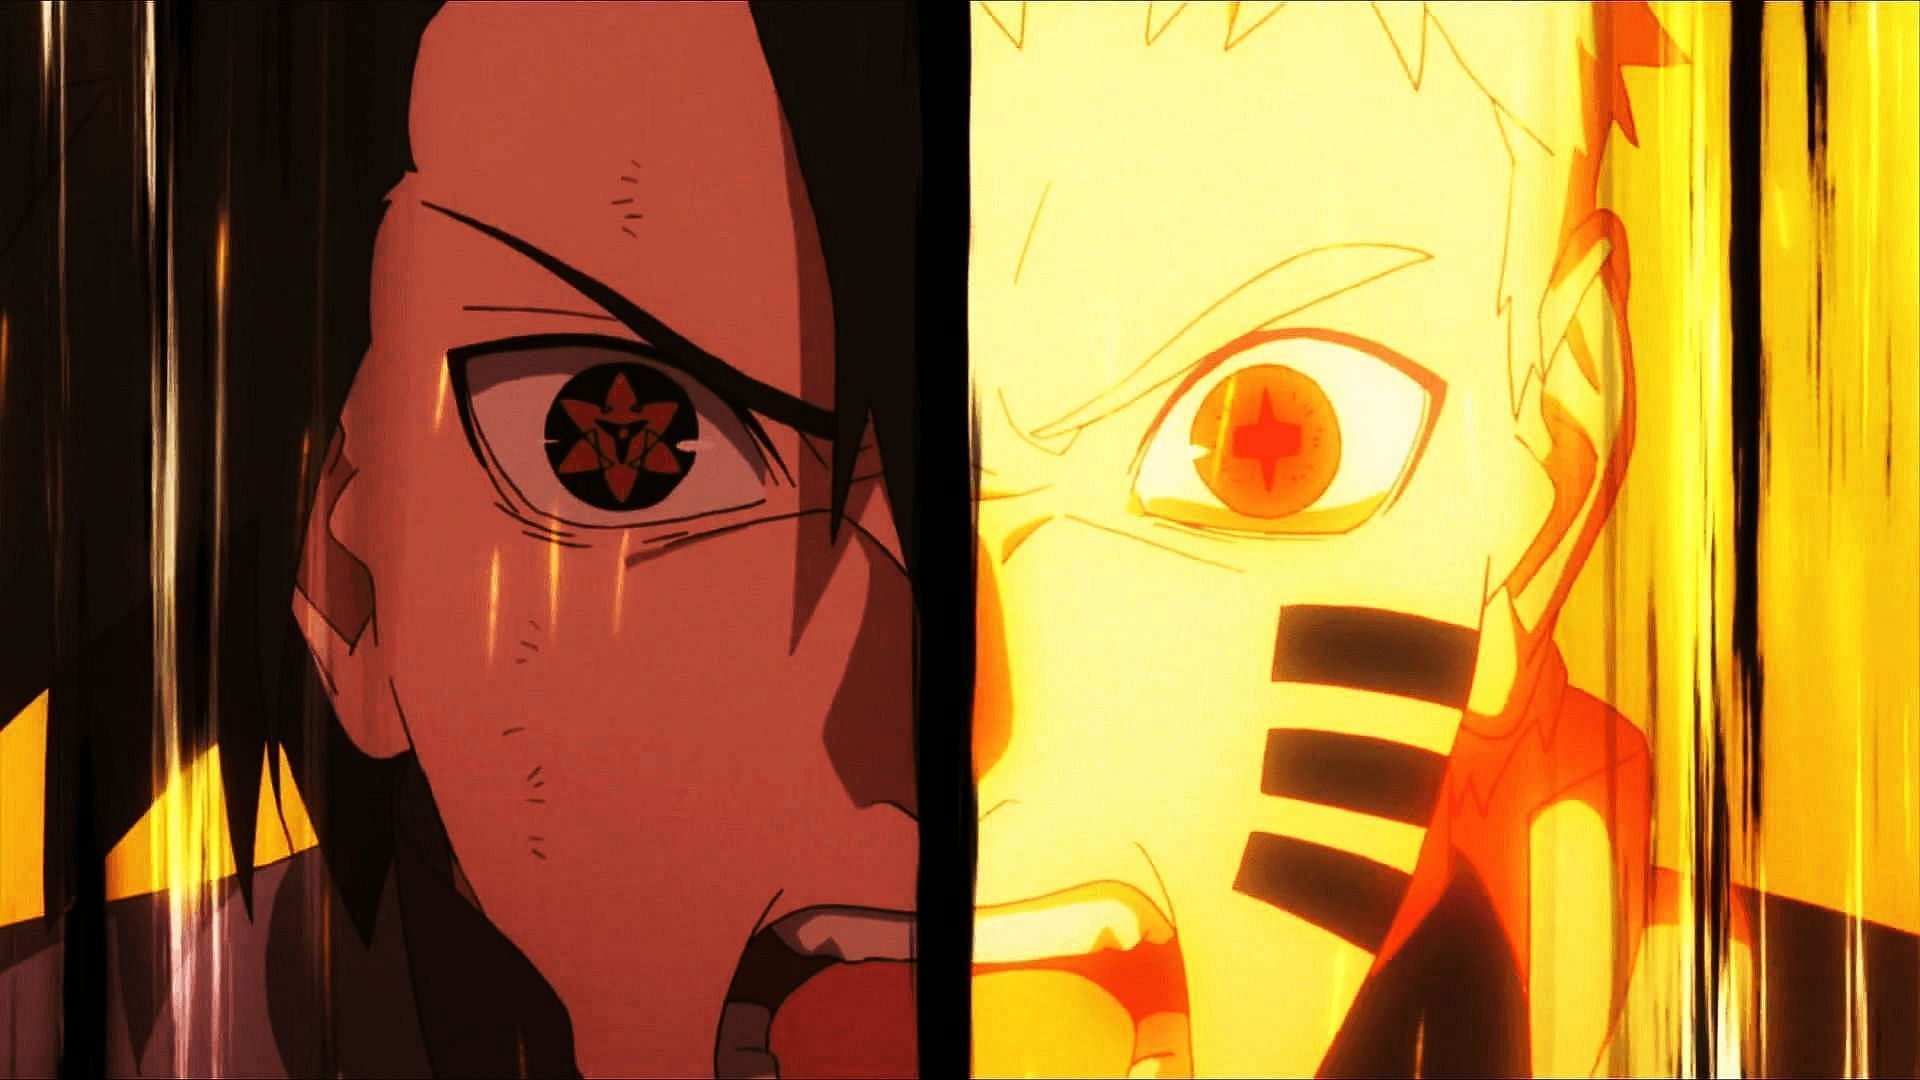 Naruto and Boruto (Image via Studio Pierrot)